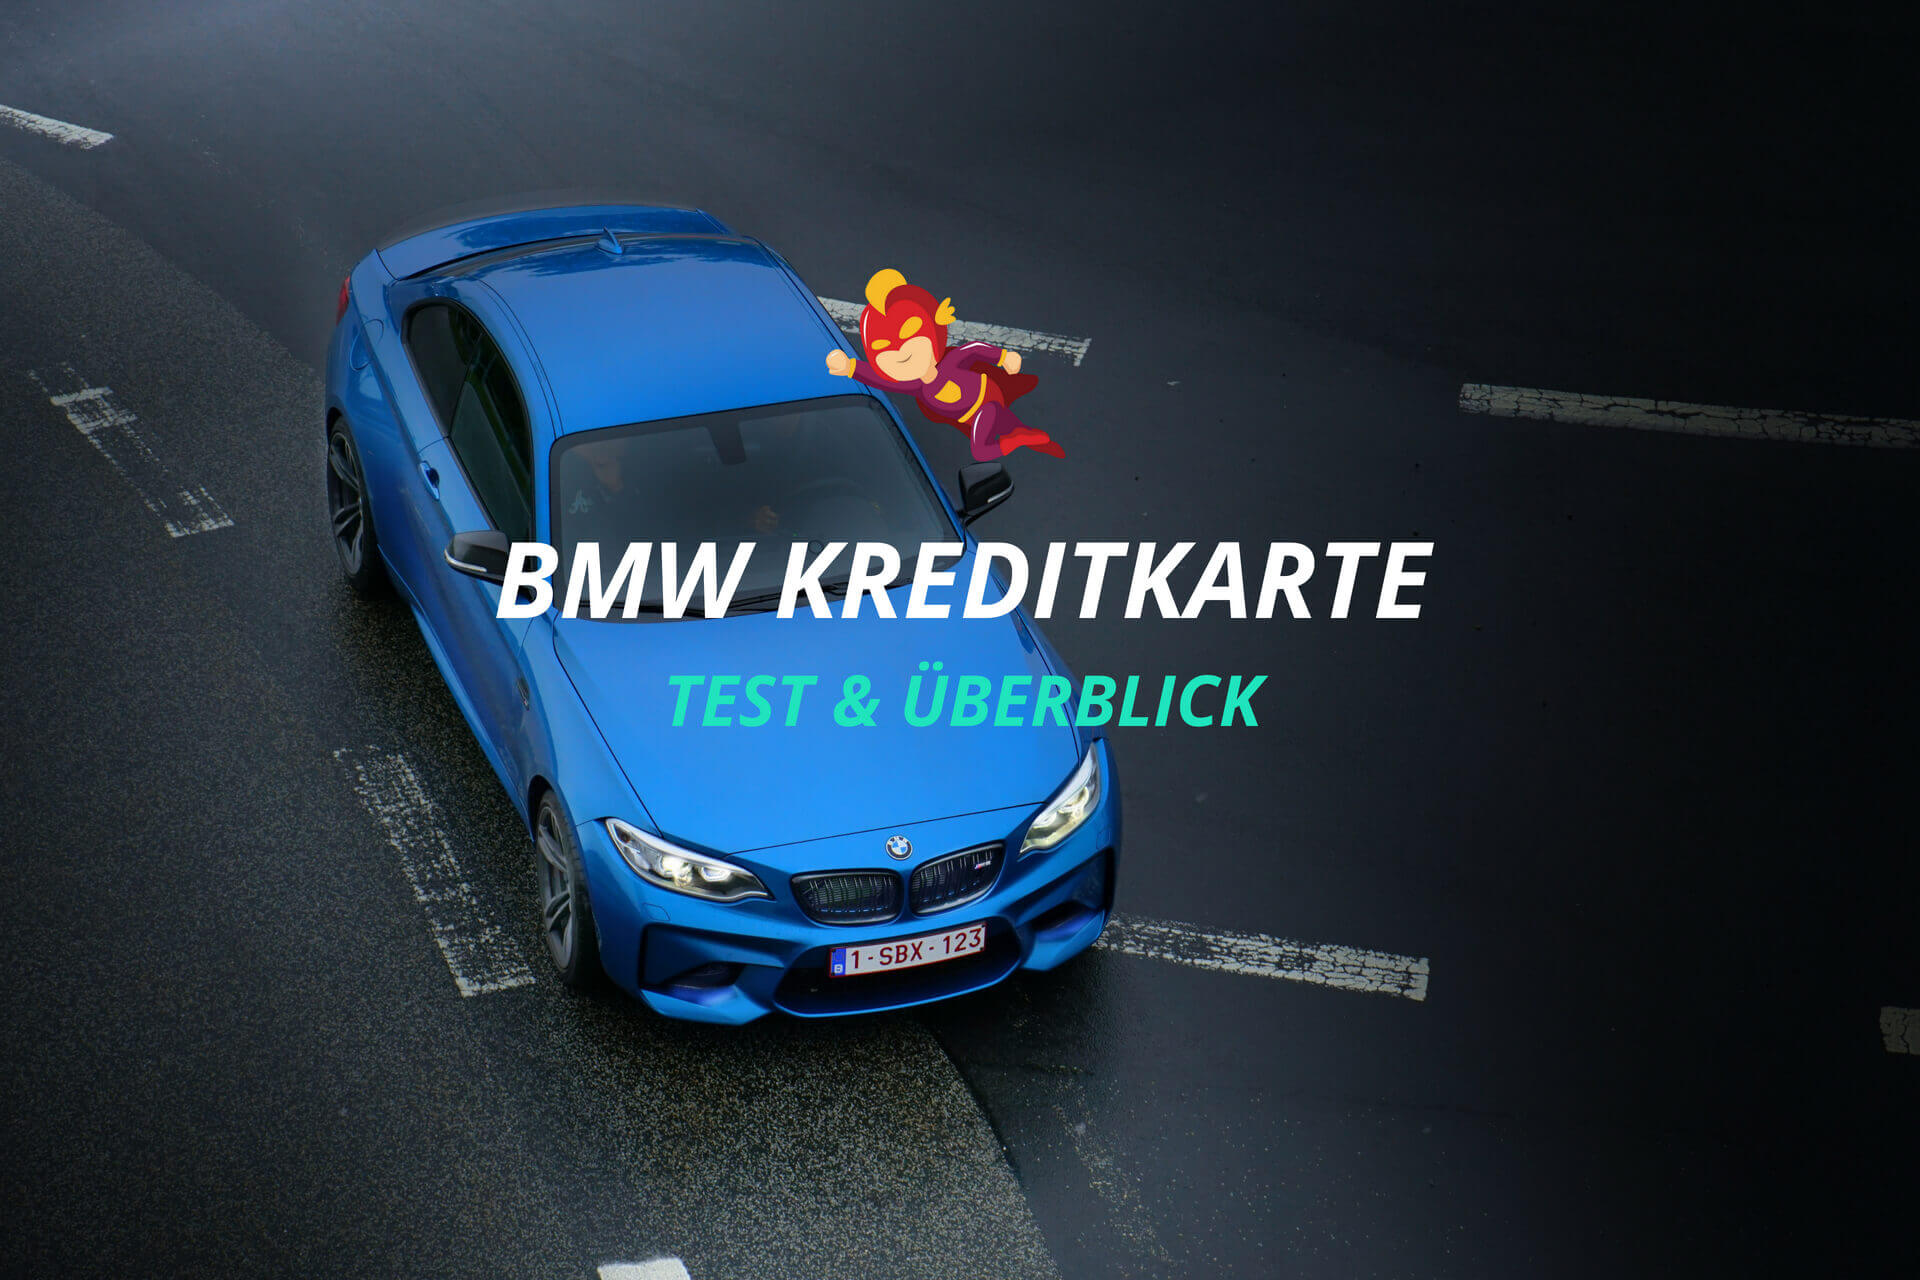 BMW Kreditkarte Test - Mastercard von BMW - Finanzhelden.org